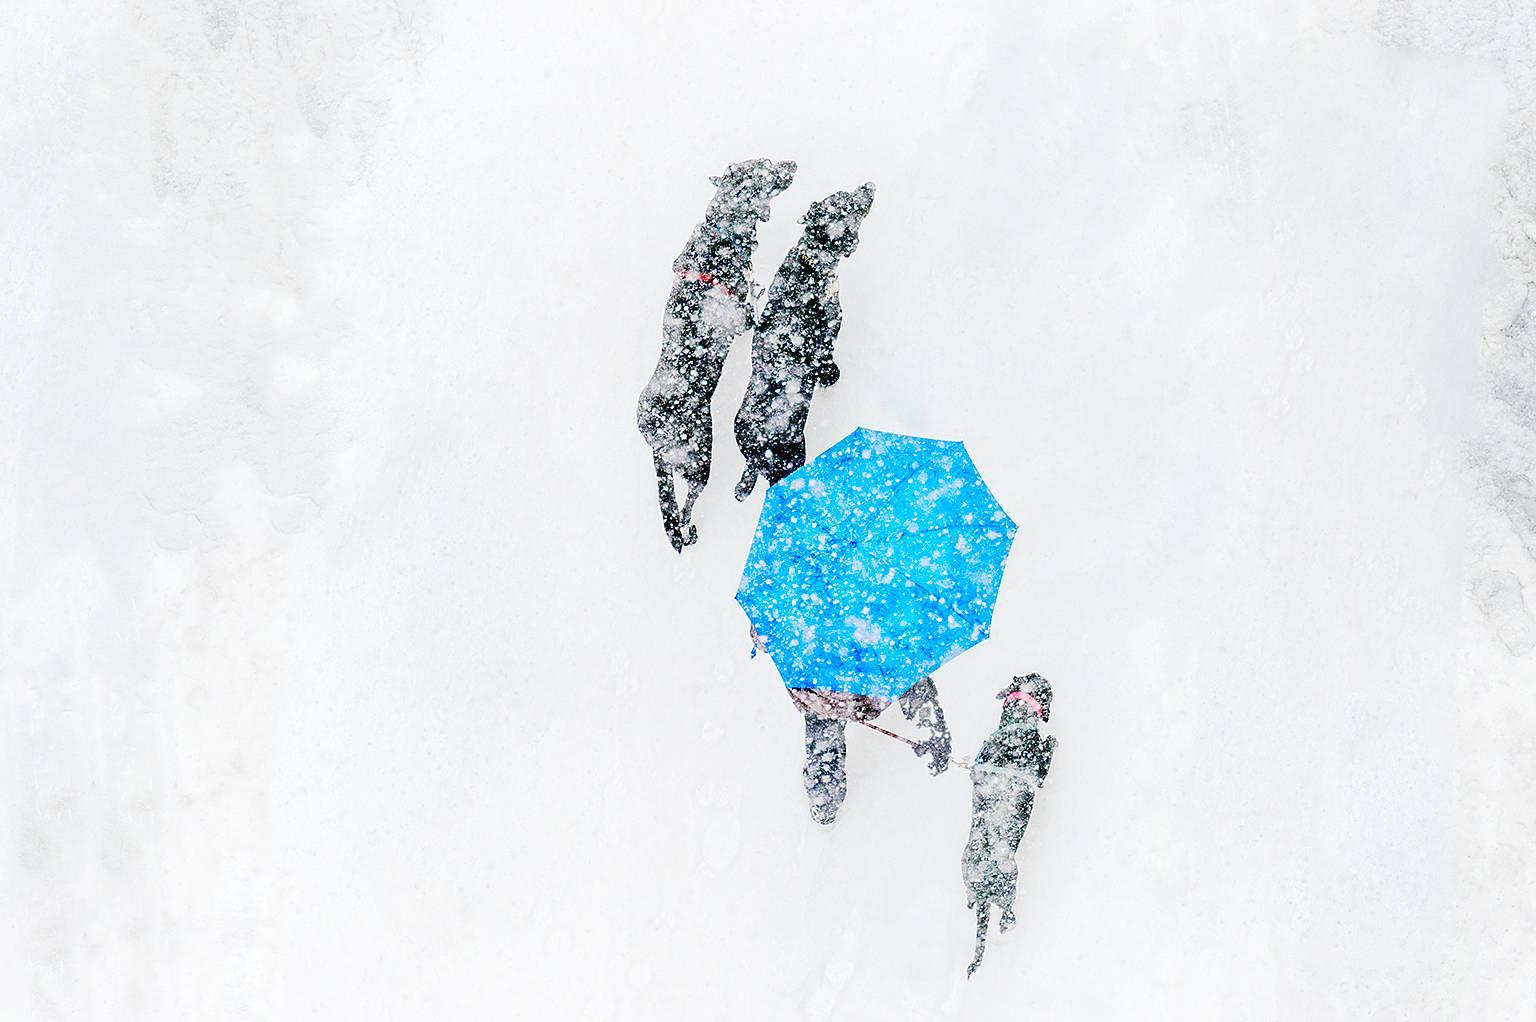 Hunde im Schnee, monochrome Farben, abstrakte Fotografie von Michell  Funk